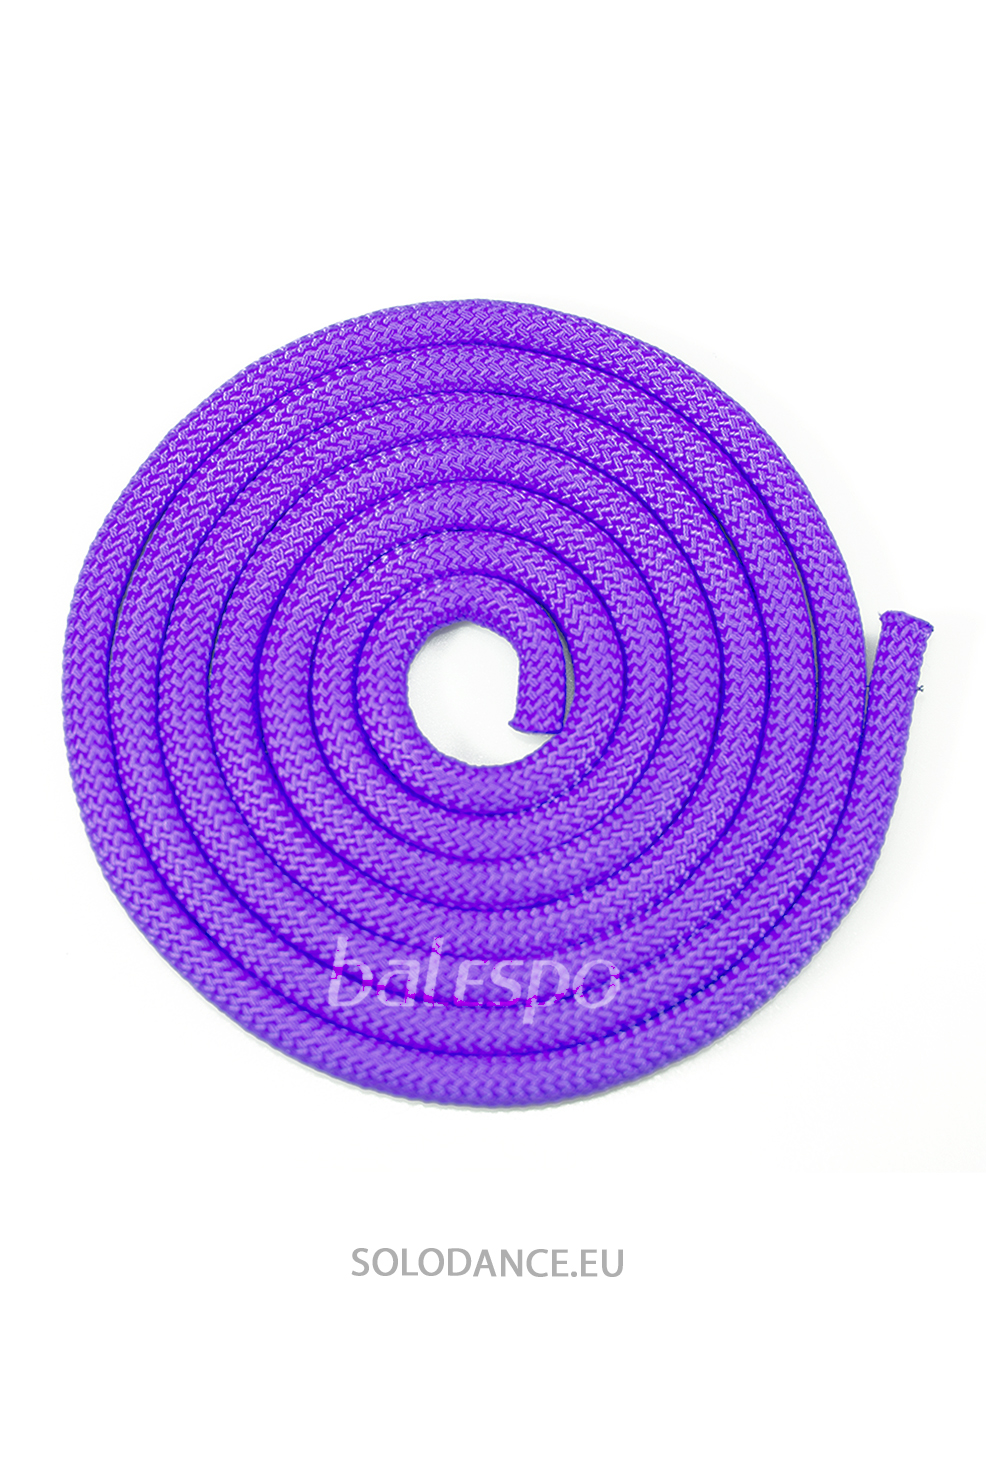 Gymnastické švihadlo BALESPO fialové 2,5 m